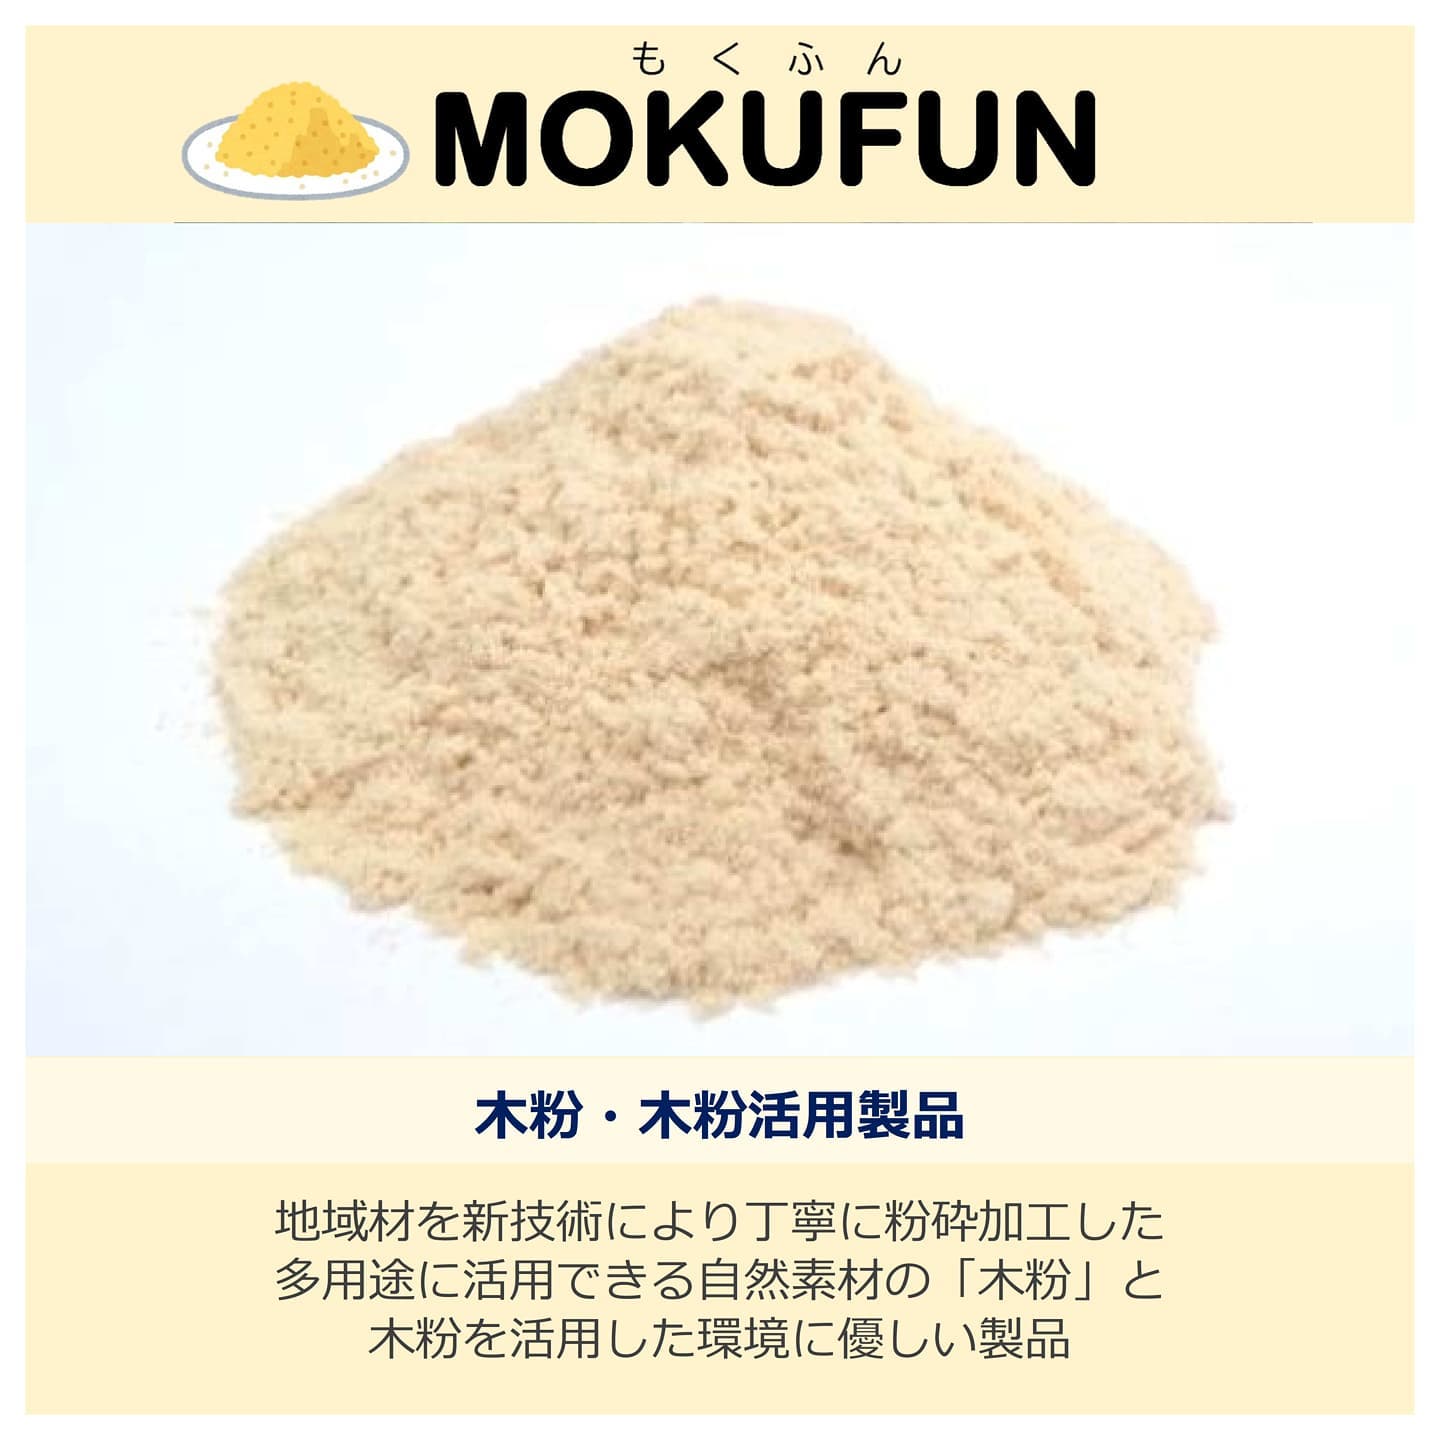 MOKUFUN　木粉のことなら那賀ウッド！(国内No1の木粉メーカーです)